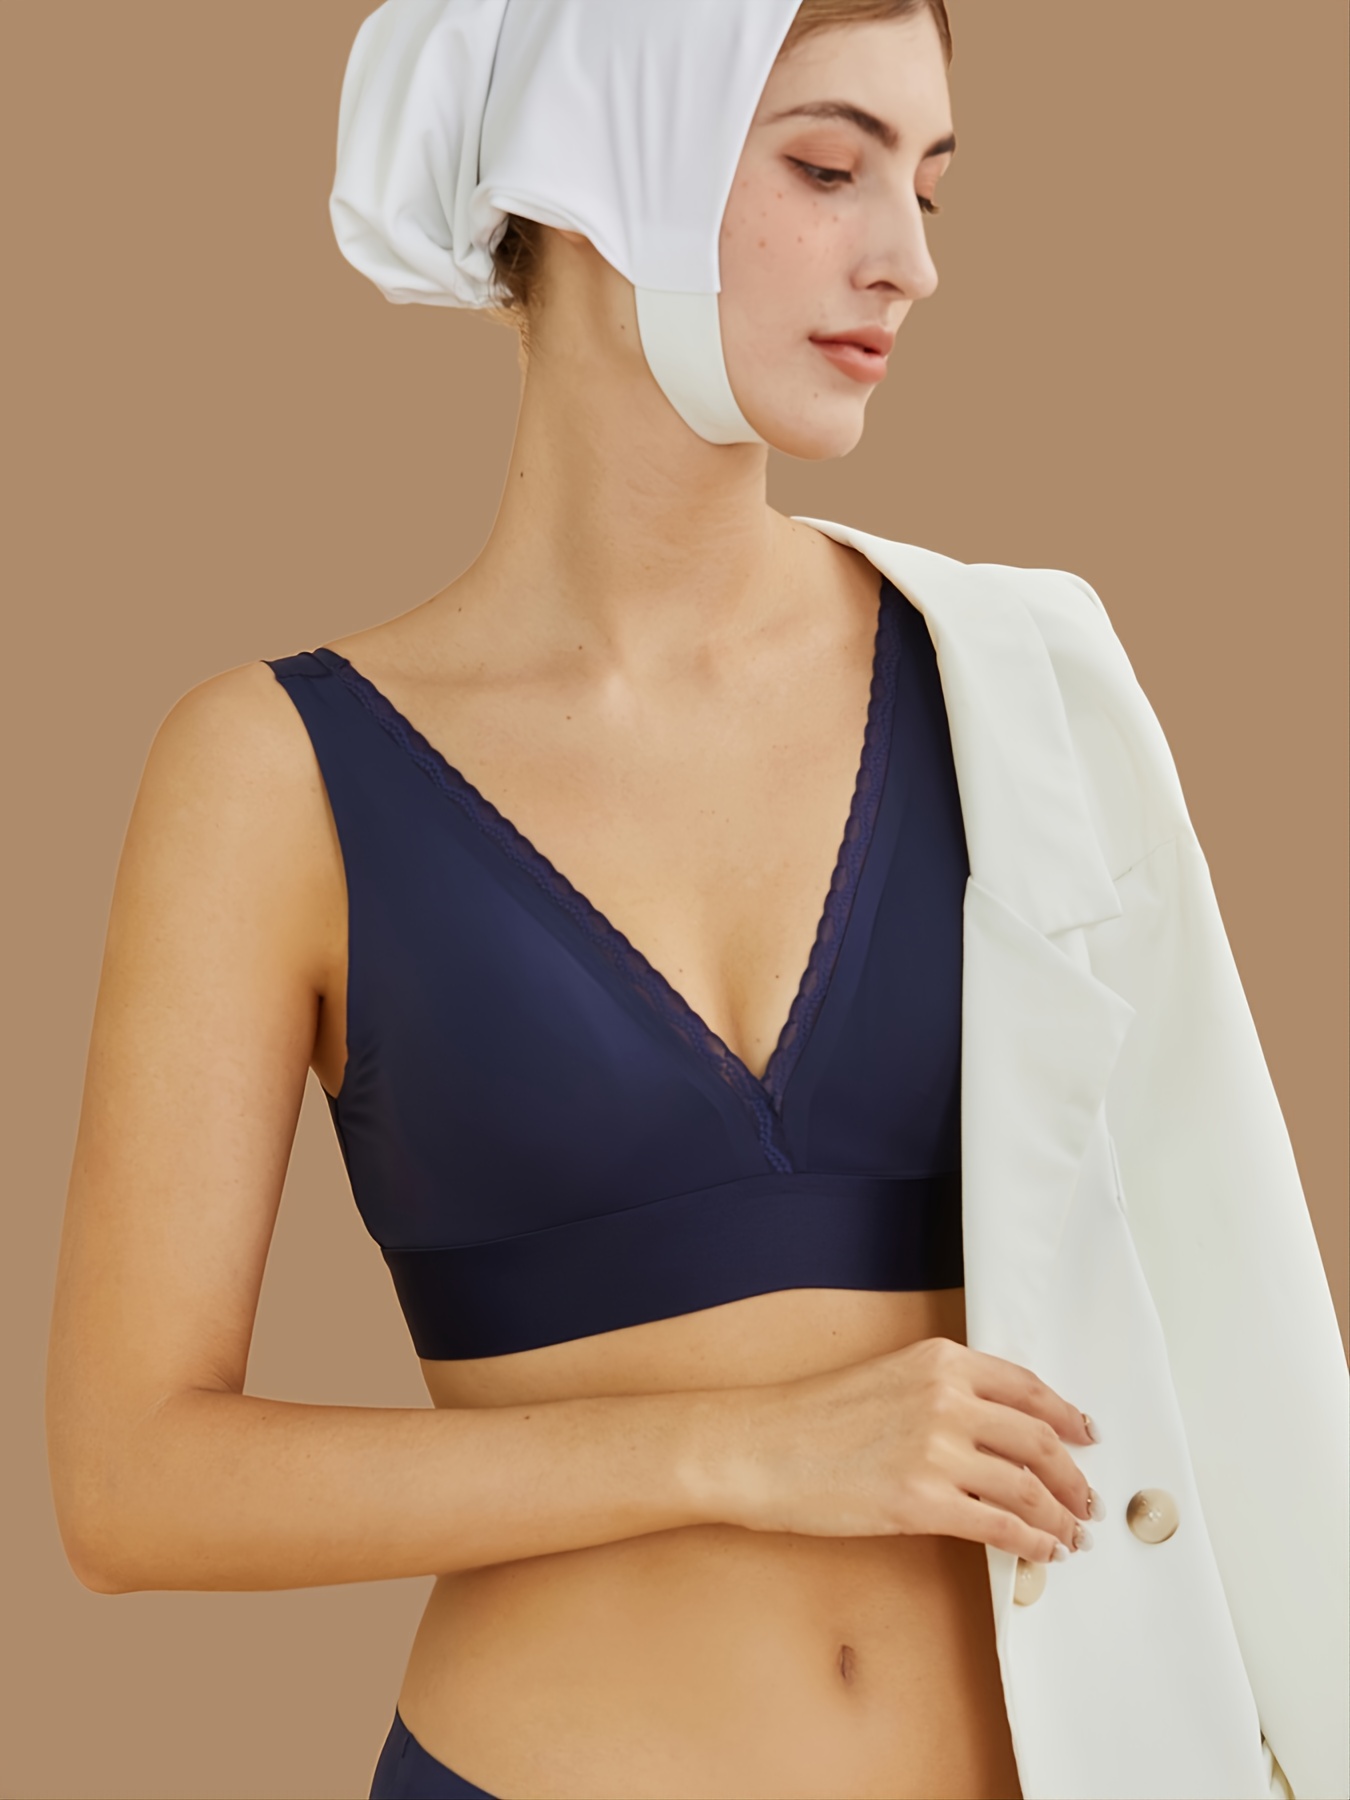 Women's Low Back Bralette Bralette Tops Women's Wireless Cotton Padded Bra